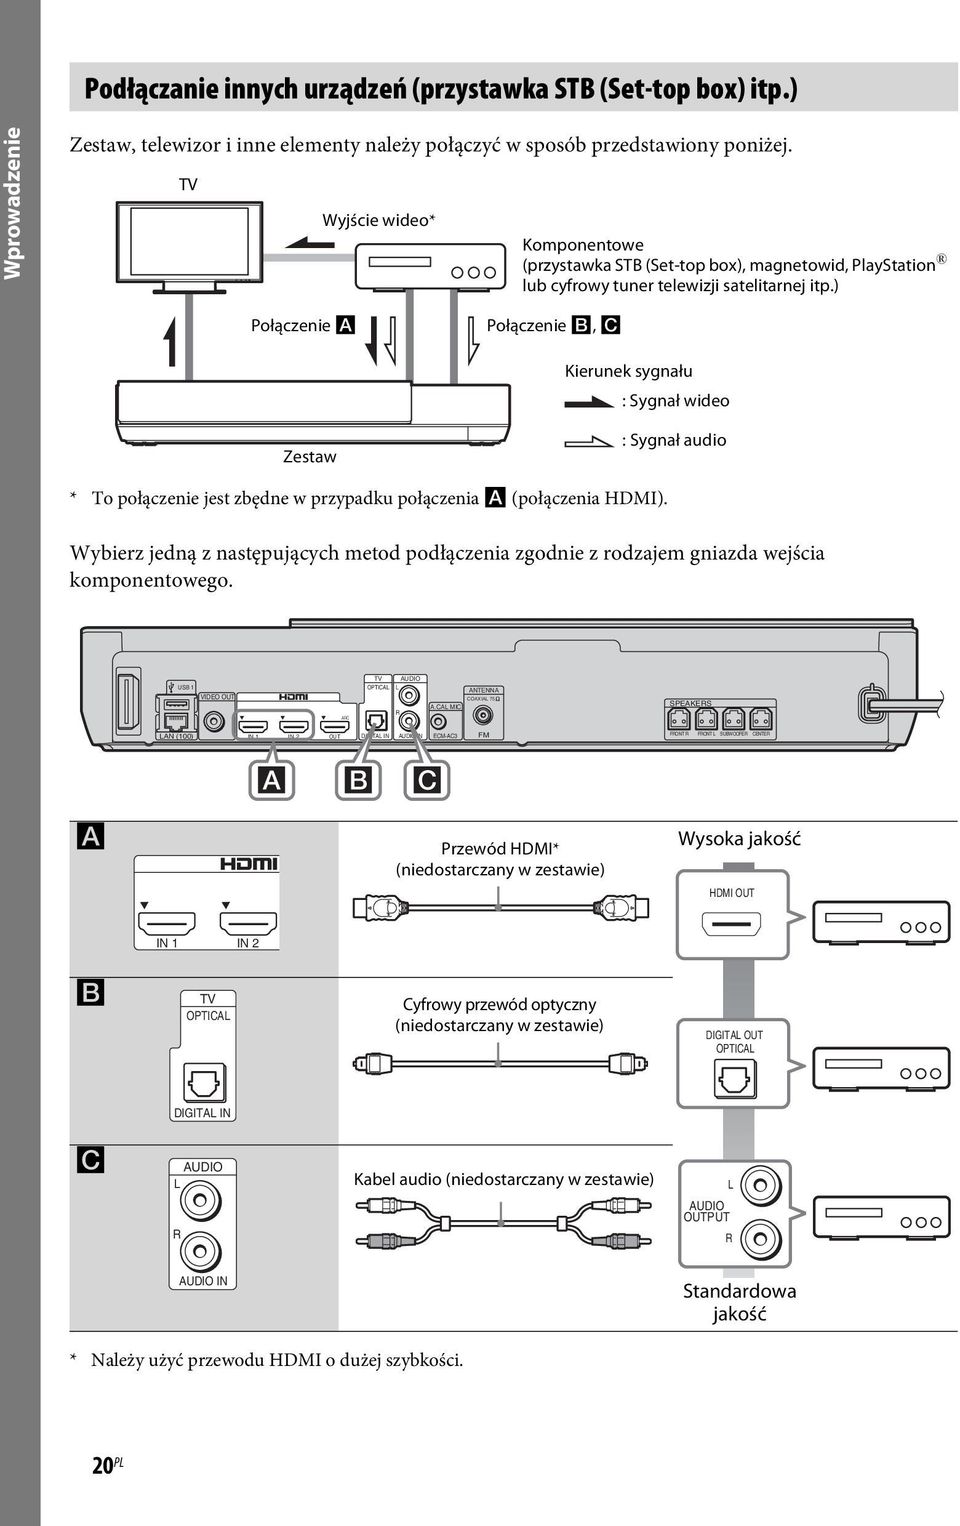 ) Połączenie A Połączenie B, C Kierunek sygnału : Sygnał wideo Zestaw : Sygnał audio * To połączenie jest zbędne w przypadku połączenia A (połączenia HDMI).